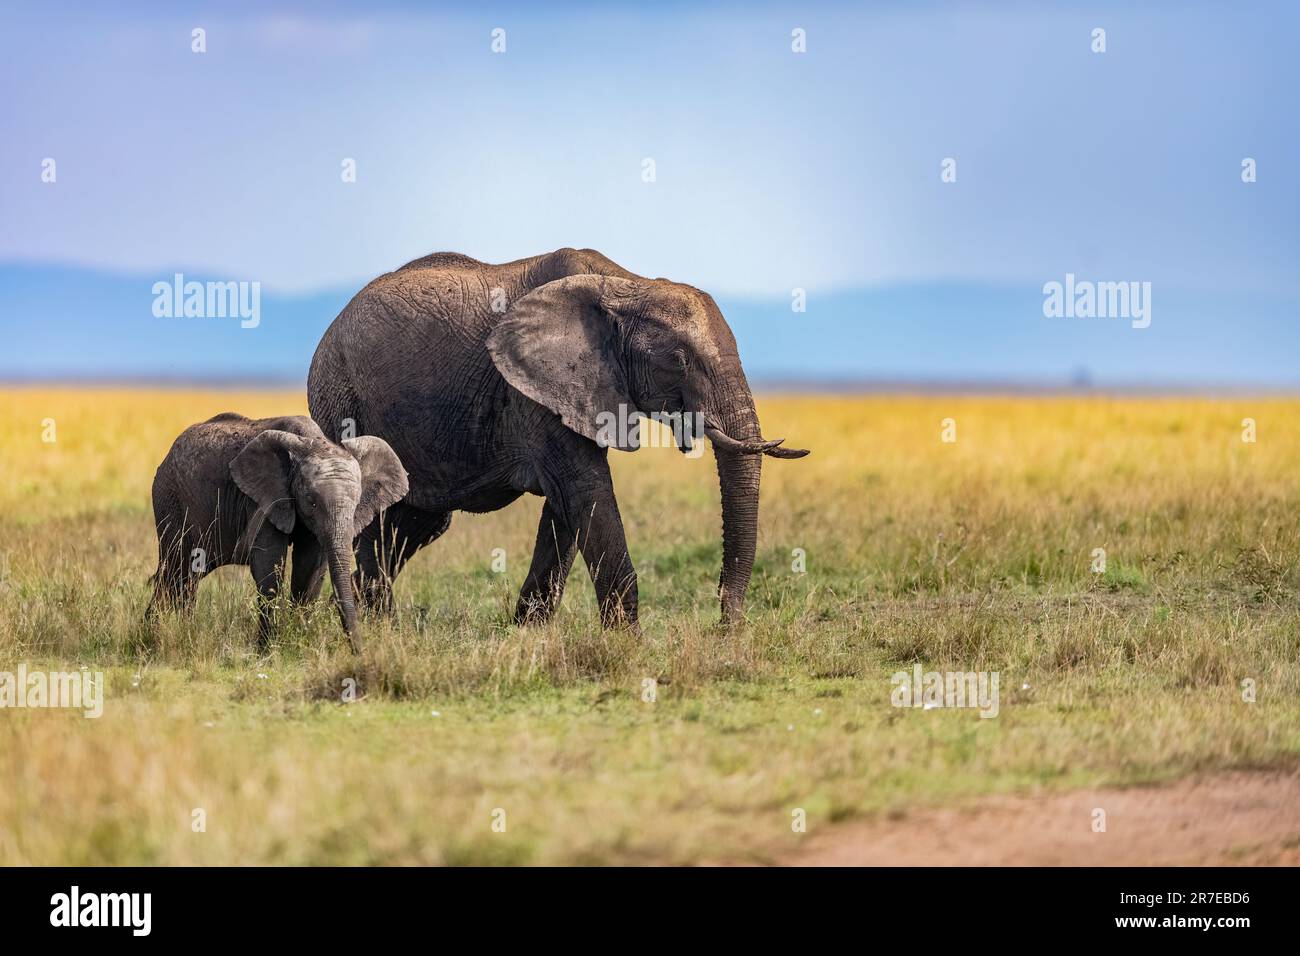 Ein Elefant und ein junges Kalb. AMBOSELI-NATIONALPARK, KENIA: ATEMBERAUBENDE Bilder zeigen einen majestätischen Elefanten, der vor dem Kilimandscharo posiert. Foto Stockfoto